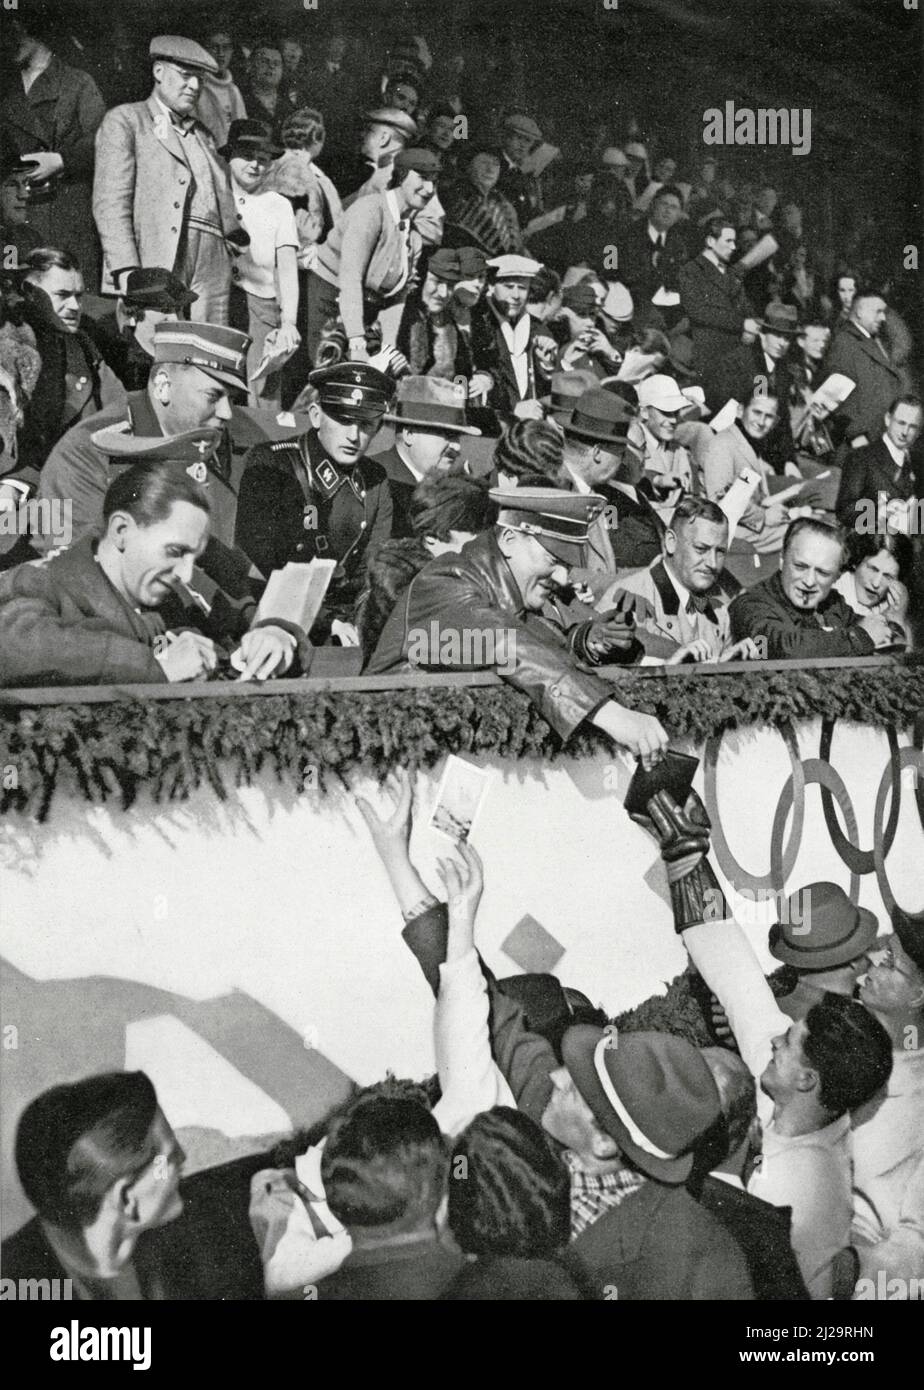 Le chancelier de Reich Adolf Hitler signe des autographes pour les athlètes canadiens dans le stade de glace artificielle, avec le ministre de la propagande de Reich Joseph Goebbels Banque D'Images